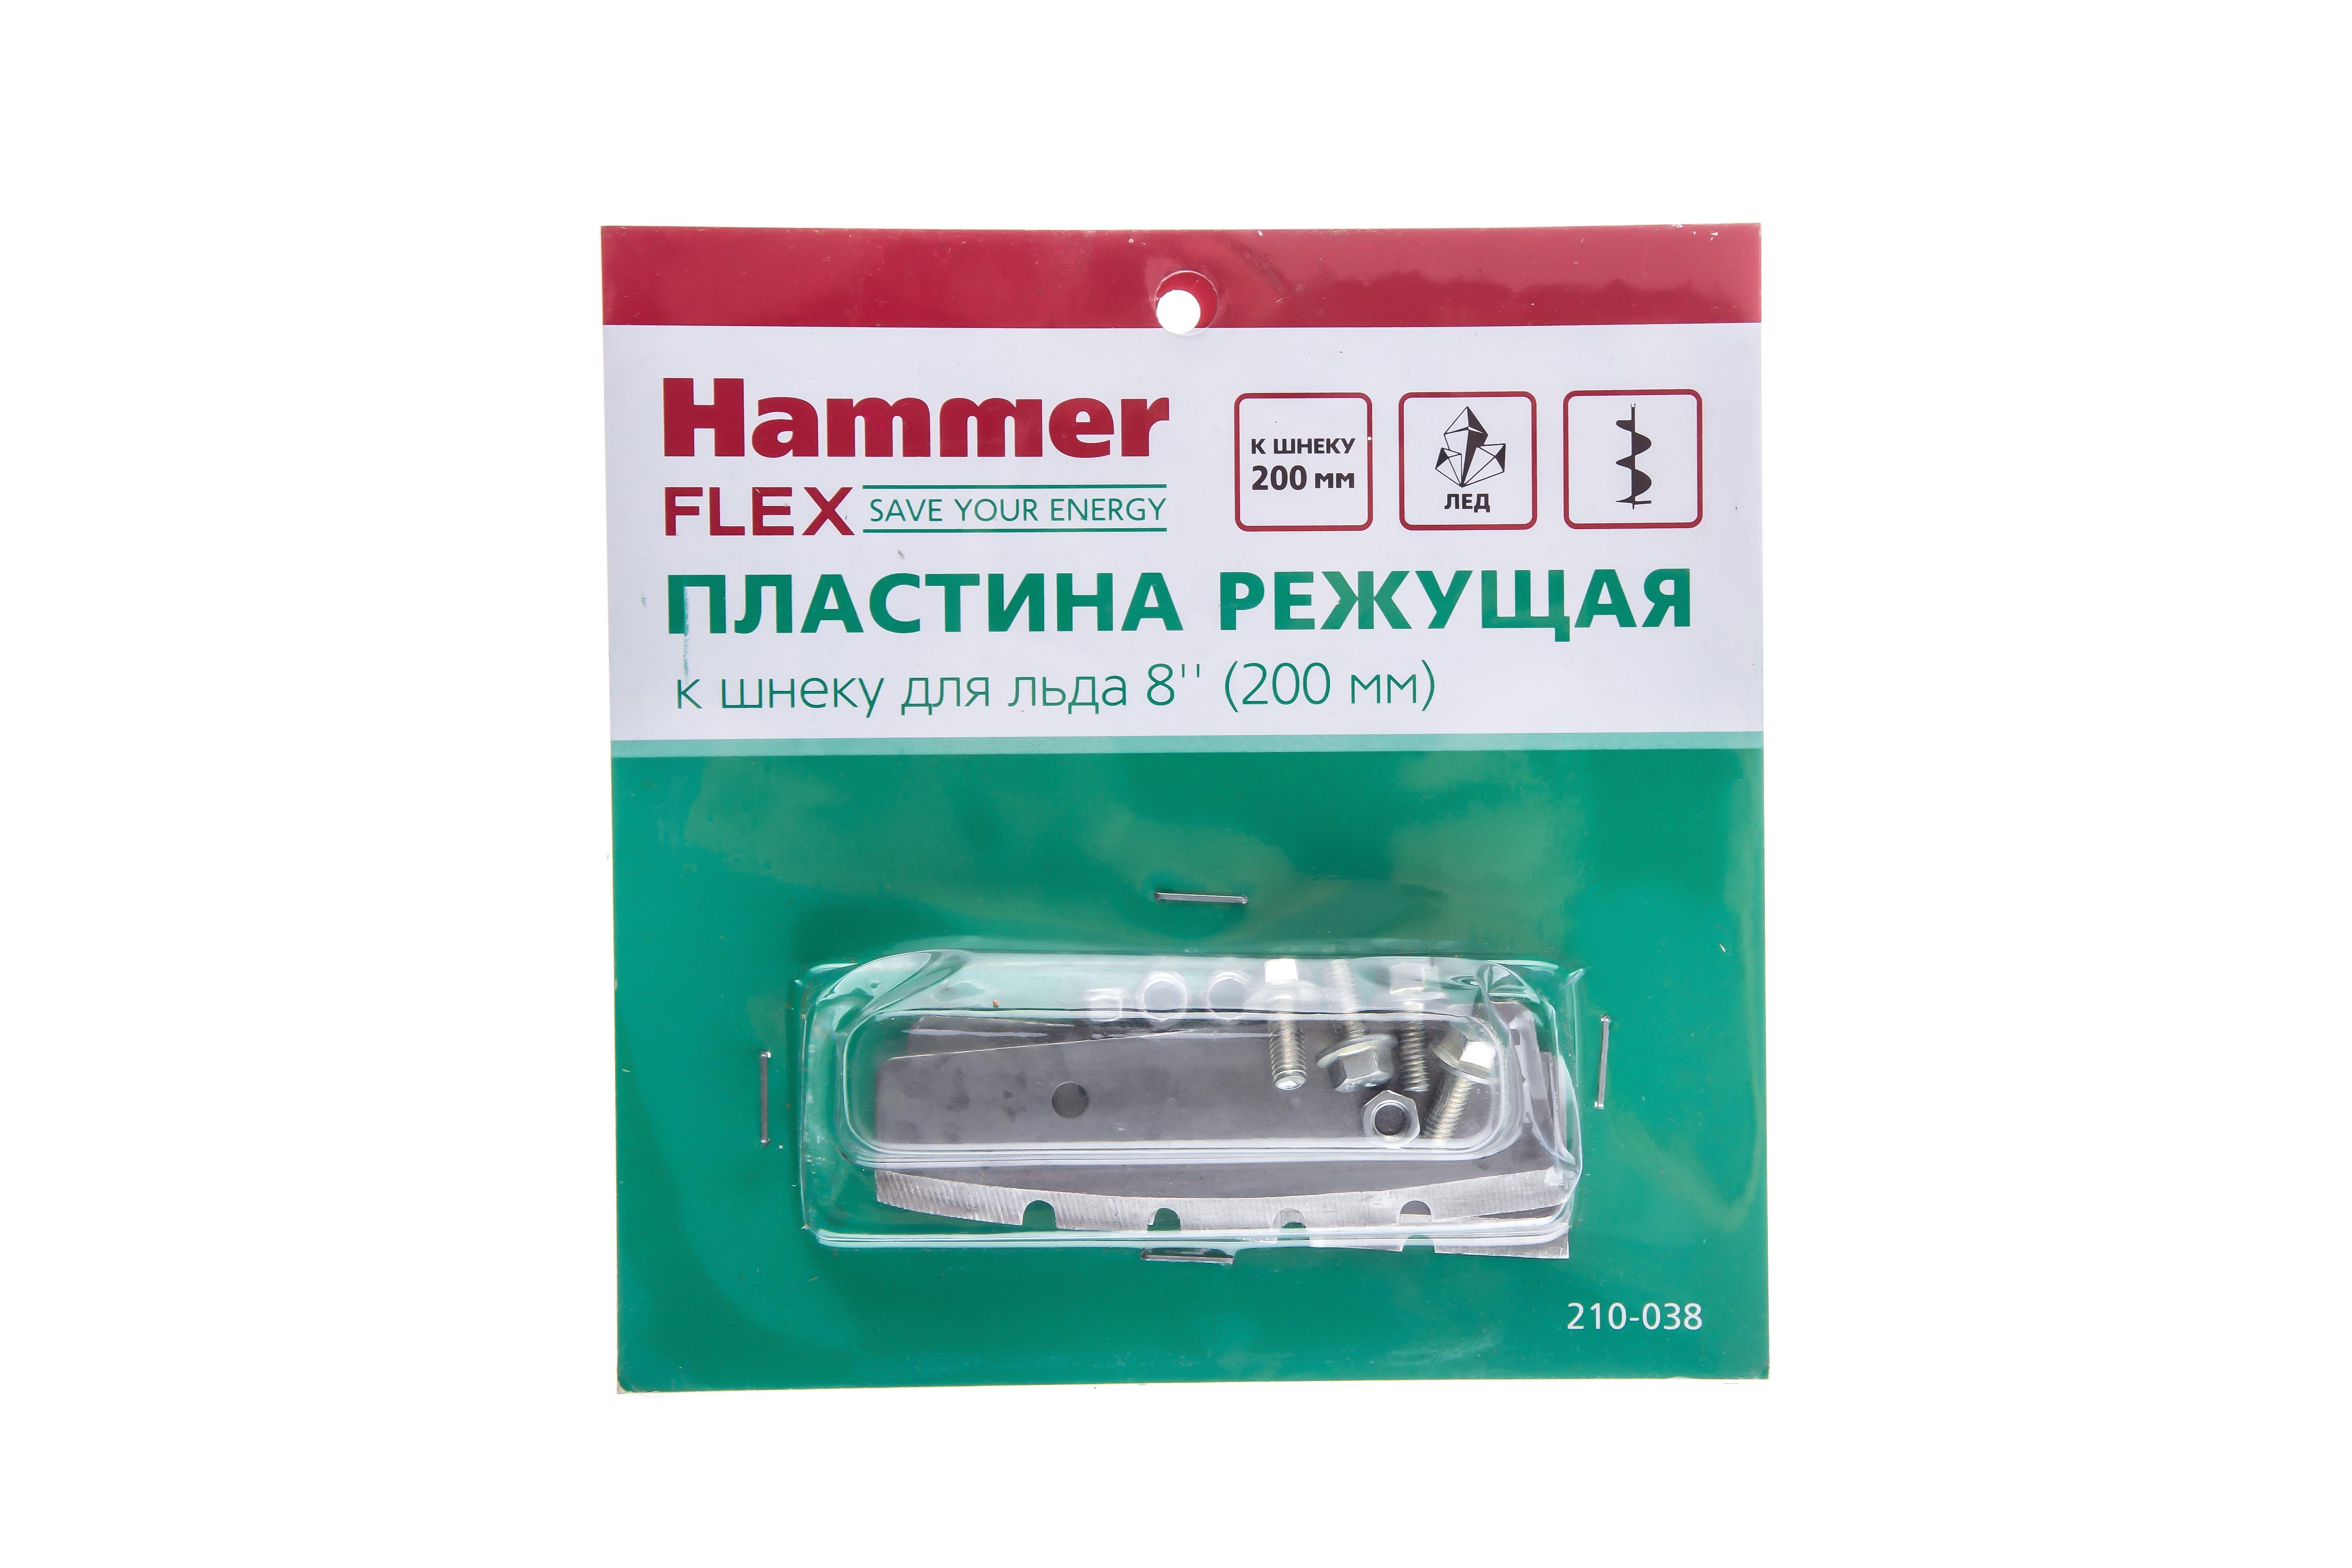 

Пластина HAMMER, 210-038